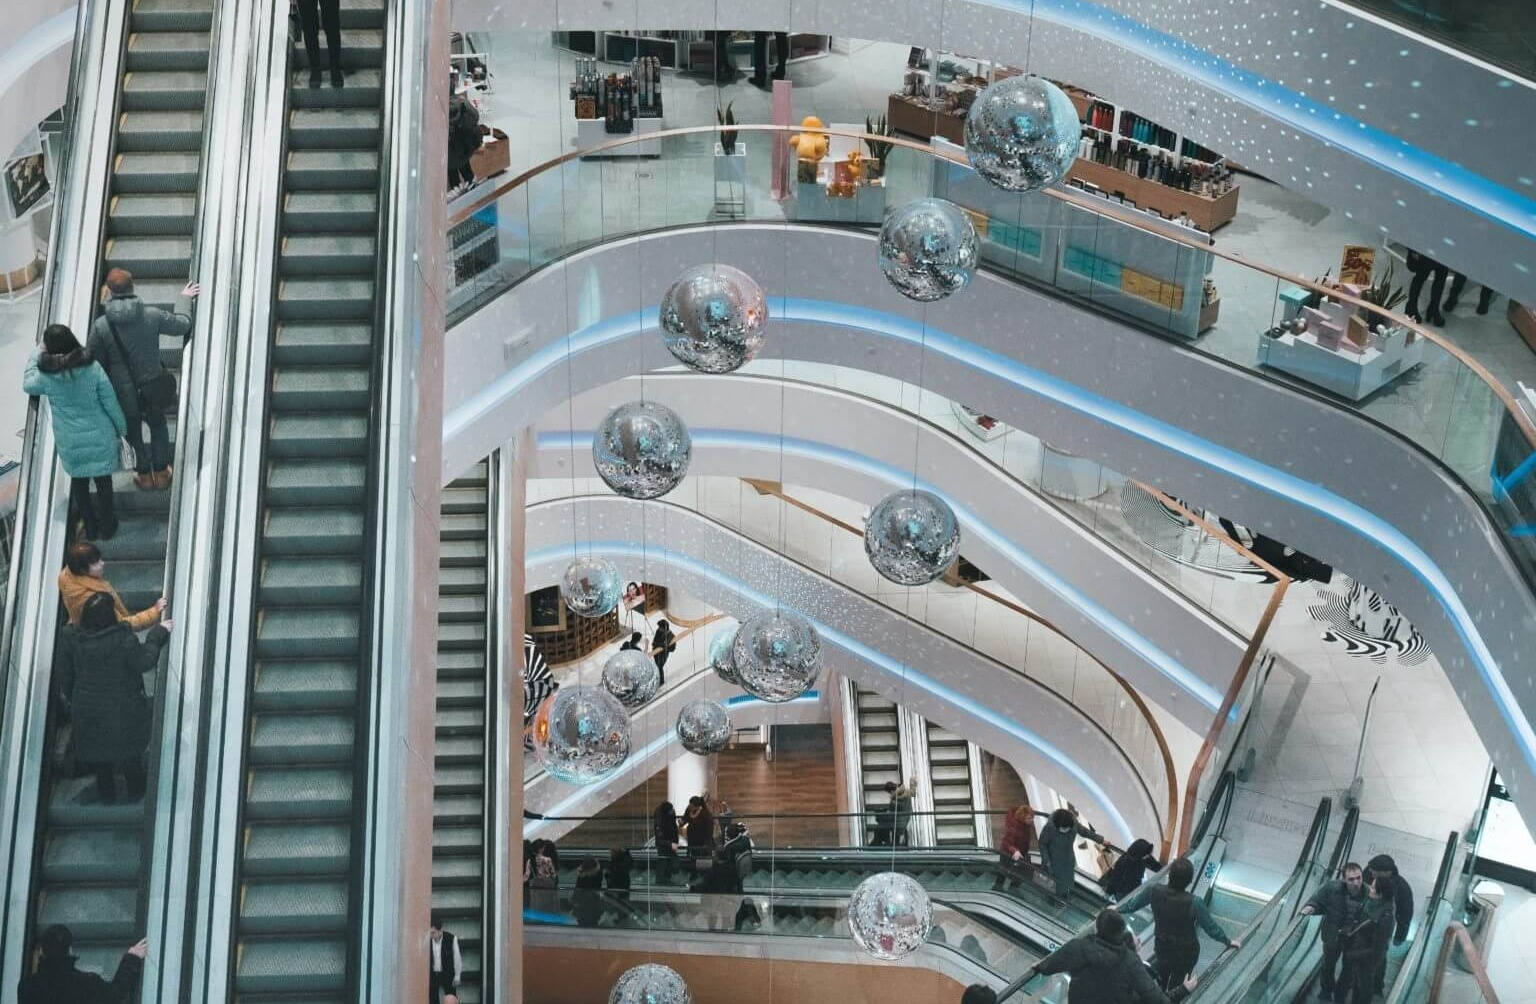 مرکز خرید - مراکز خرید استانبول در قسمت آسیایی